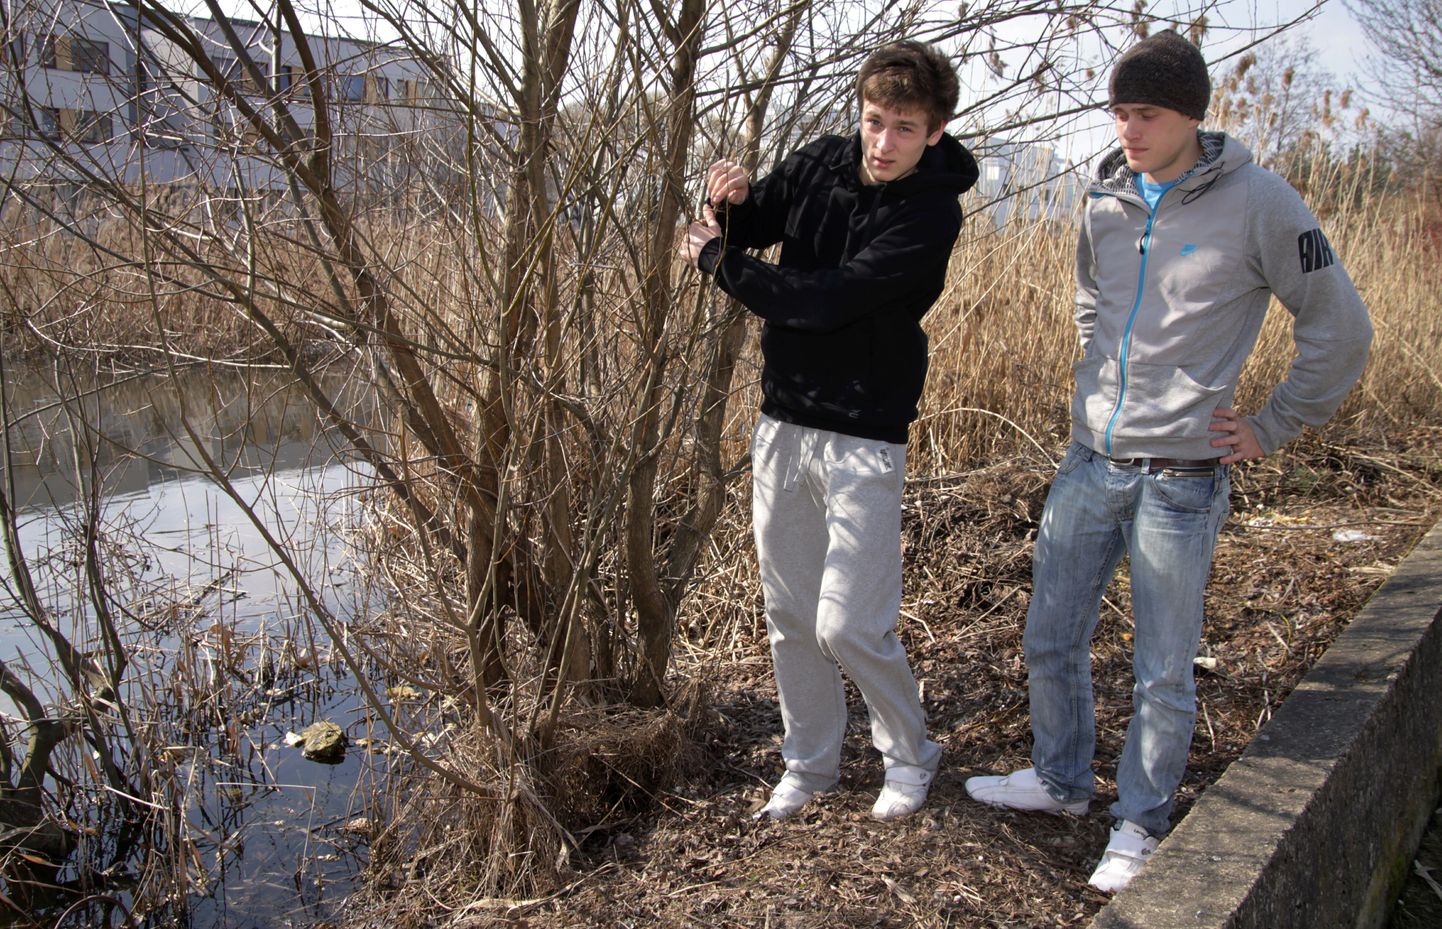 Vaprad noormehed Aleksei Rožkov (vasakul)ja Mehis Kont päästsid läbi jää tiiki kukkunud poisikesed jäisest veest.